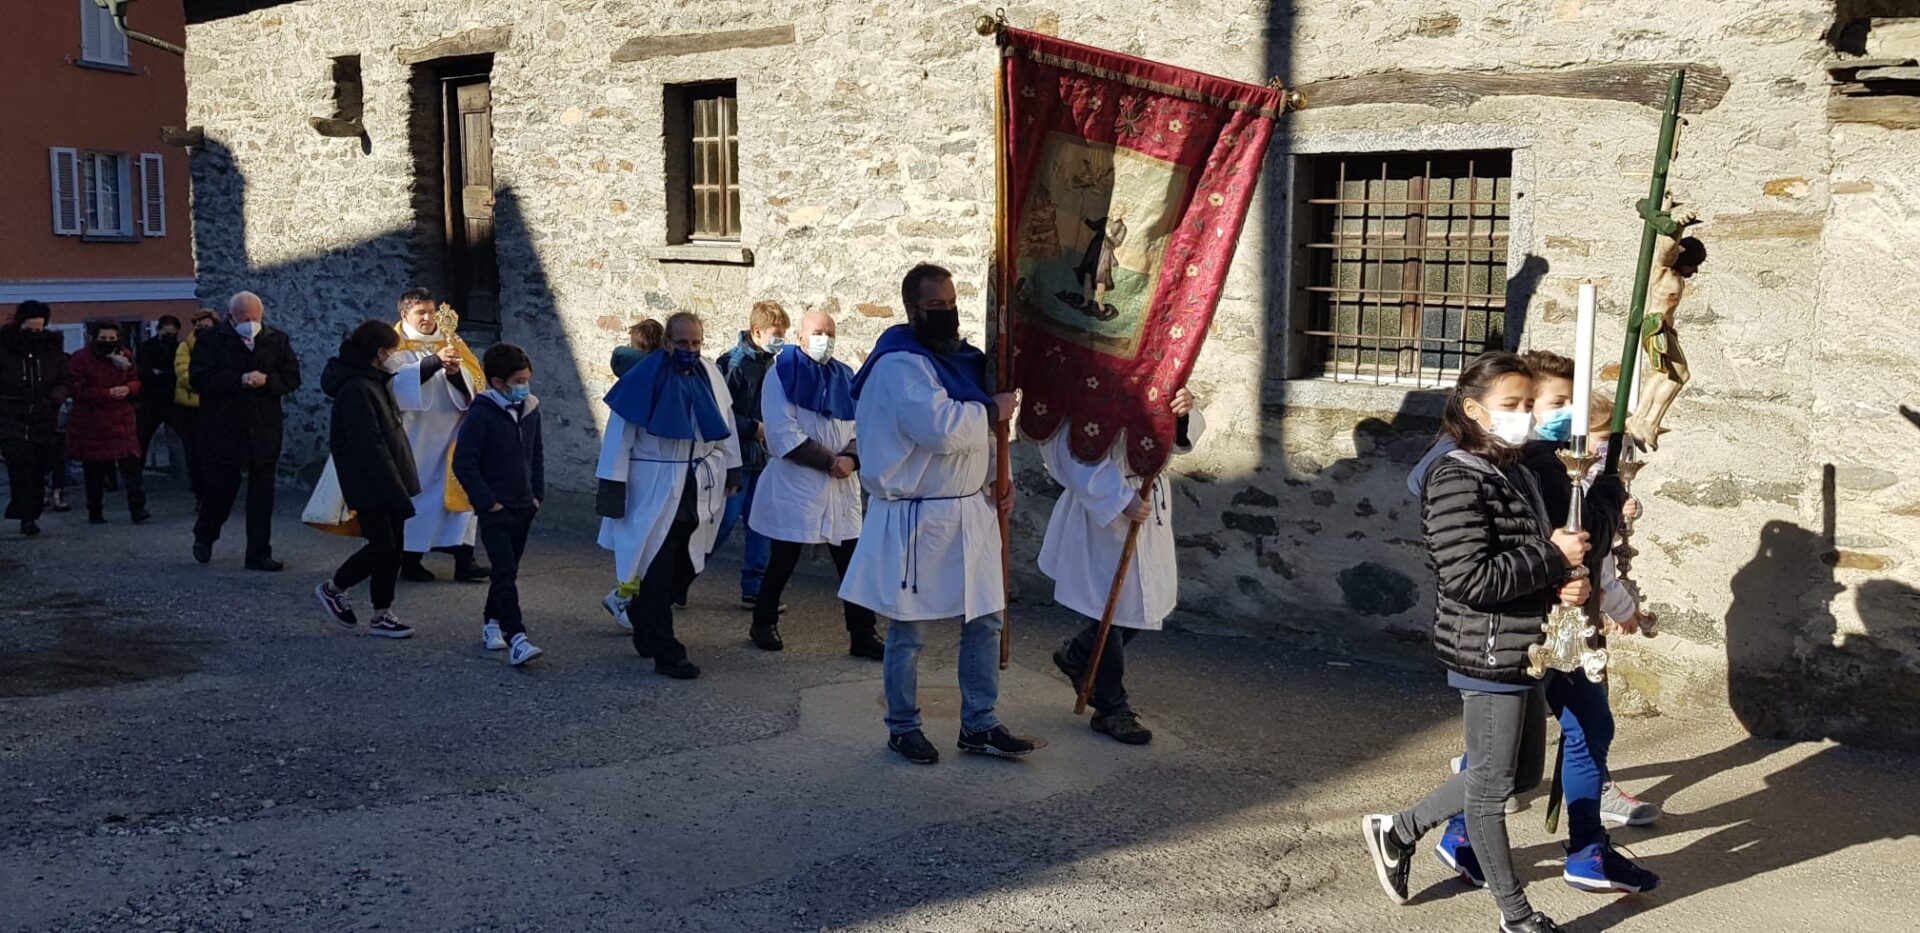 La processione in occasione della festa di San Giulio foto @parrocchiaroveredogrigioni